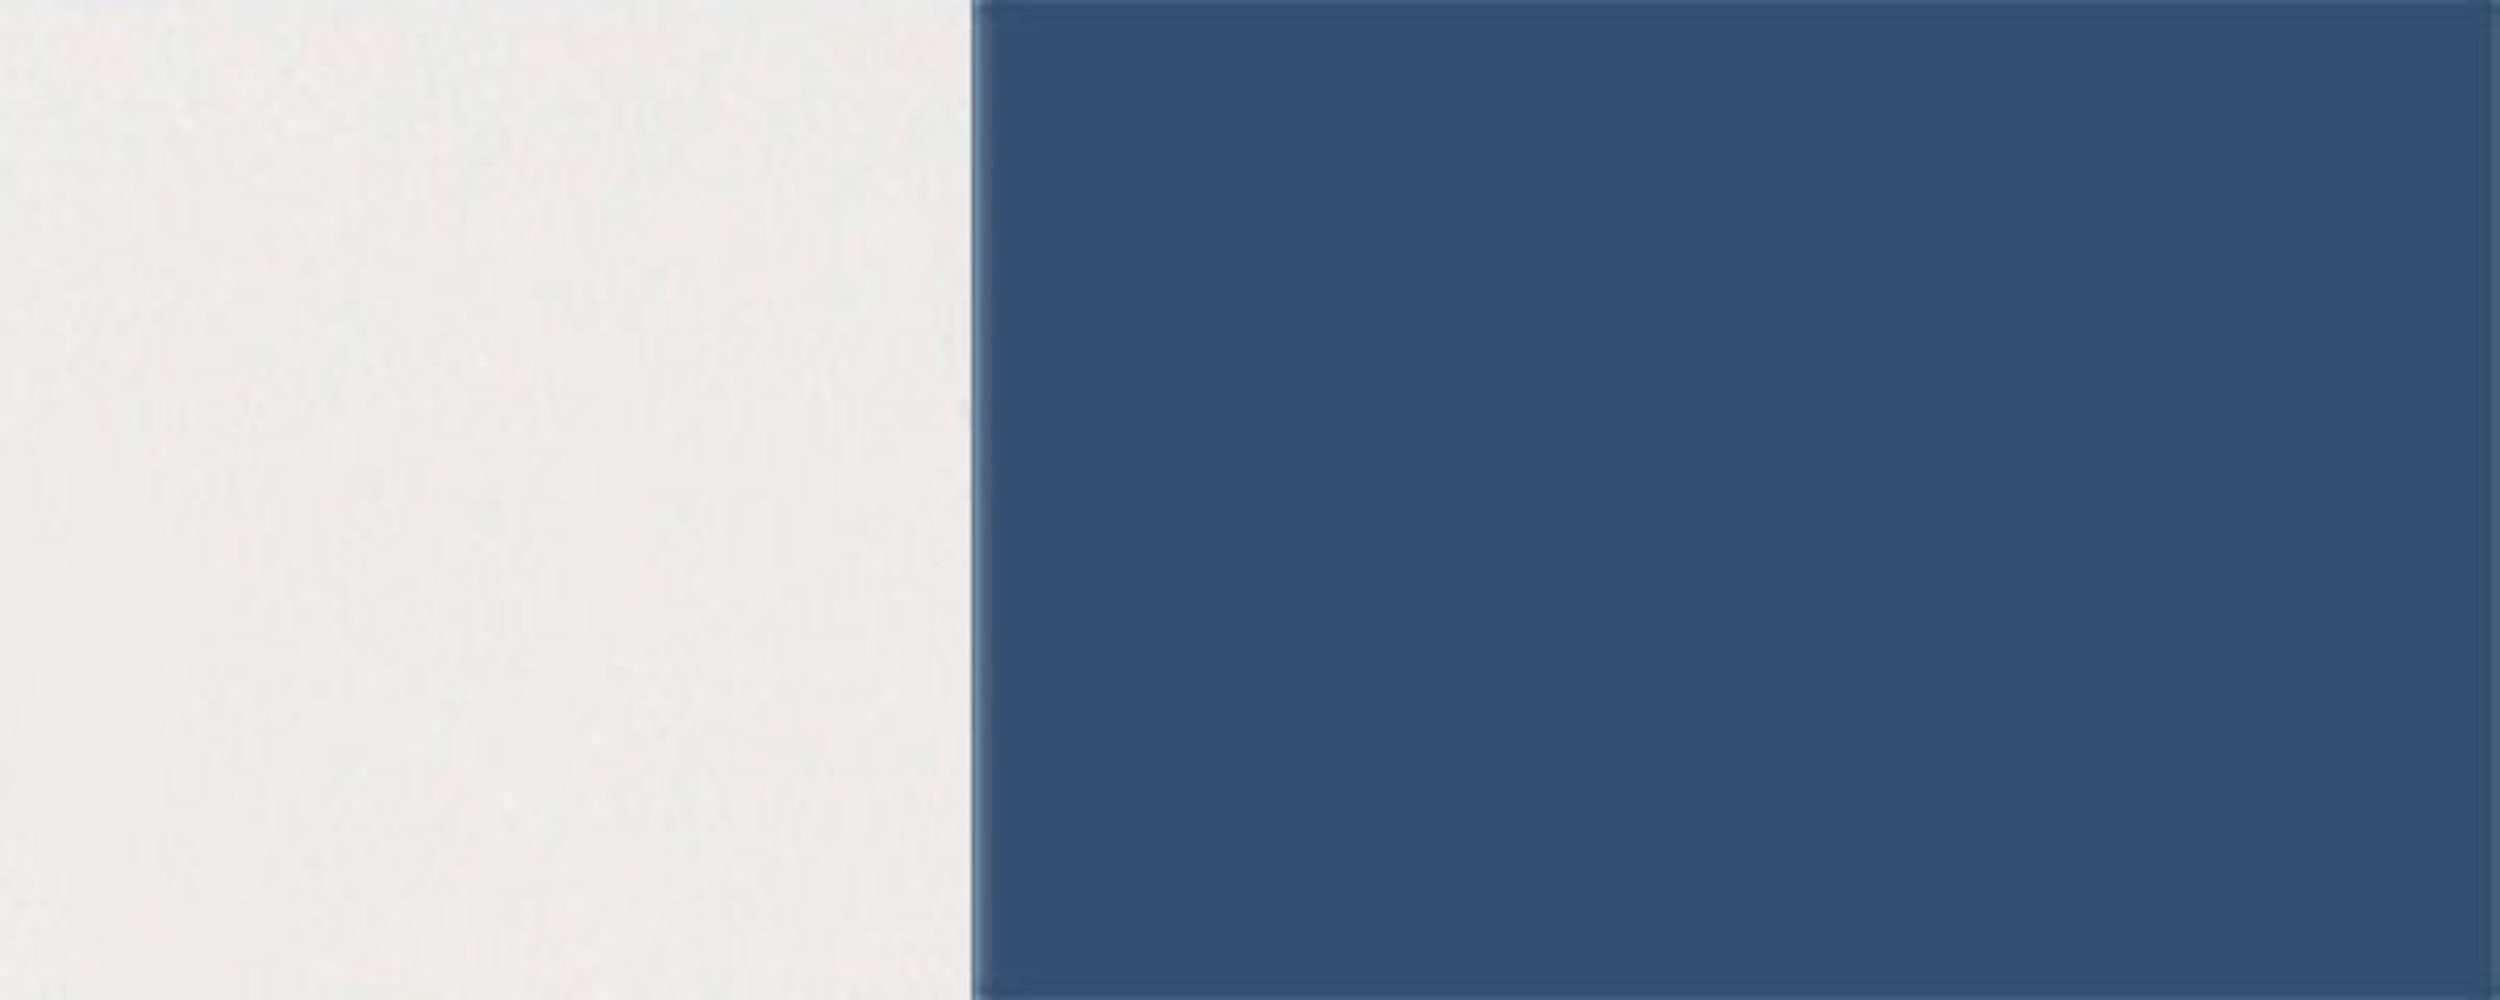 Napoli Feldmann-Wohnen 5000 90cm Front- grifflos Hochfaltklappe (Napoli) wählbar Faltlifthängeschrank 2-teilige violettblau Korpusfarbe RAL & Hochglanz